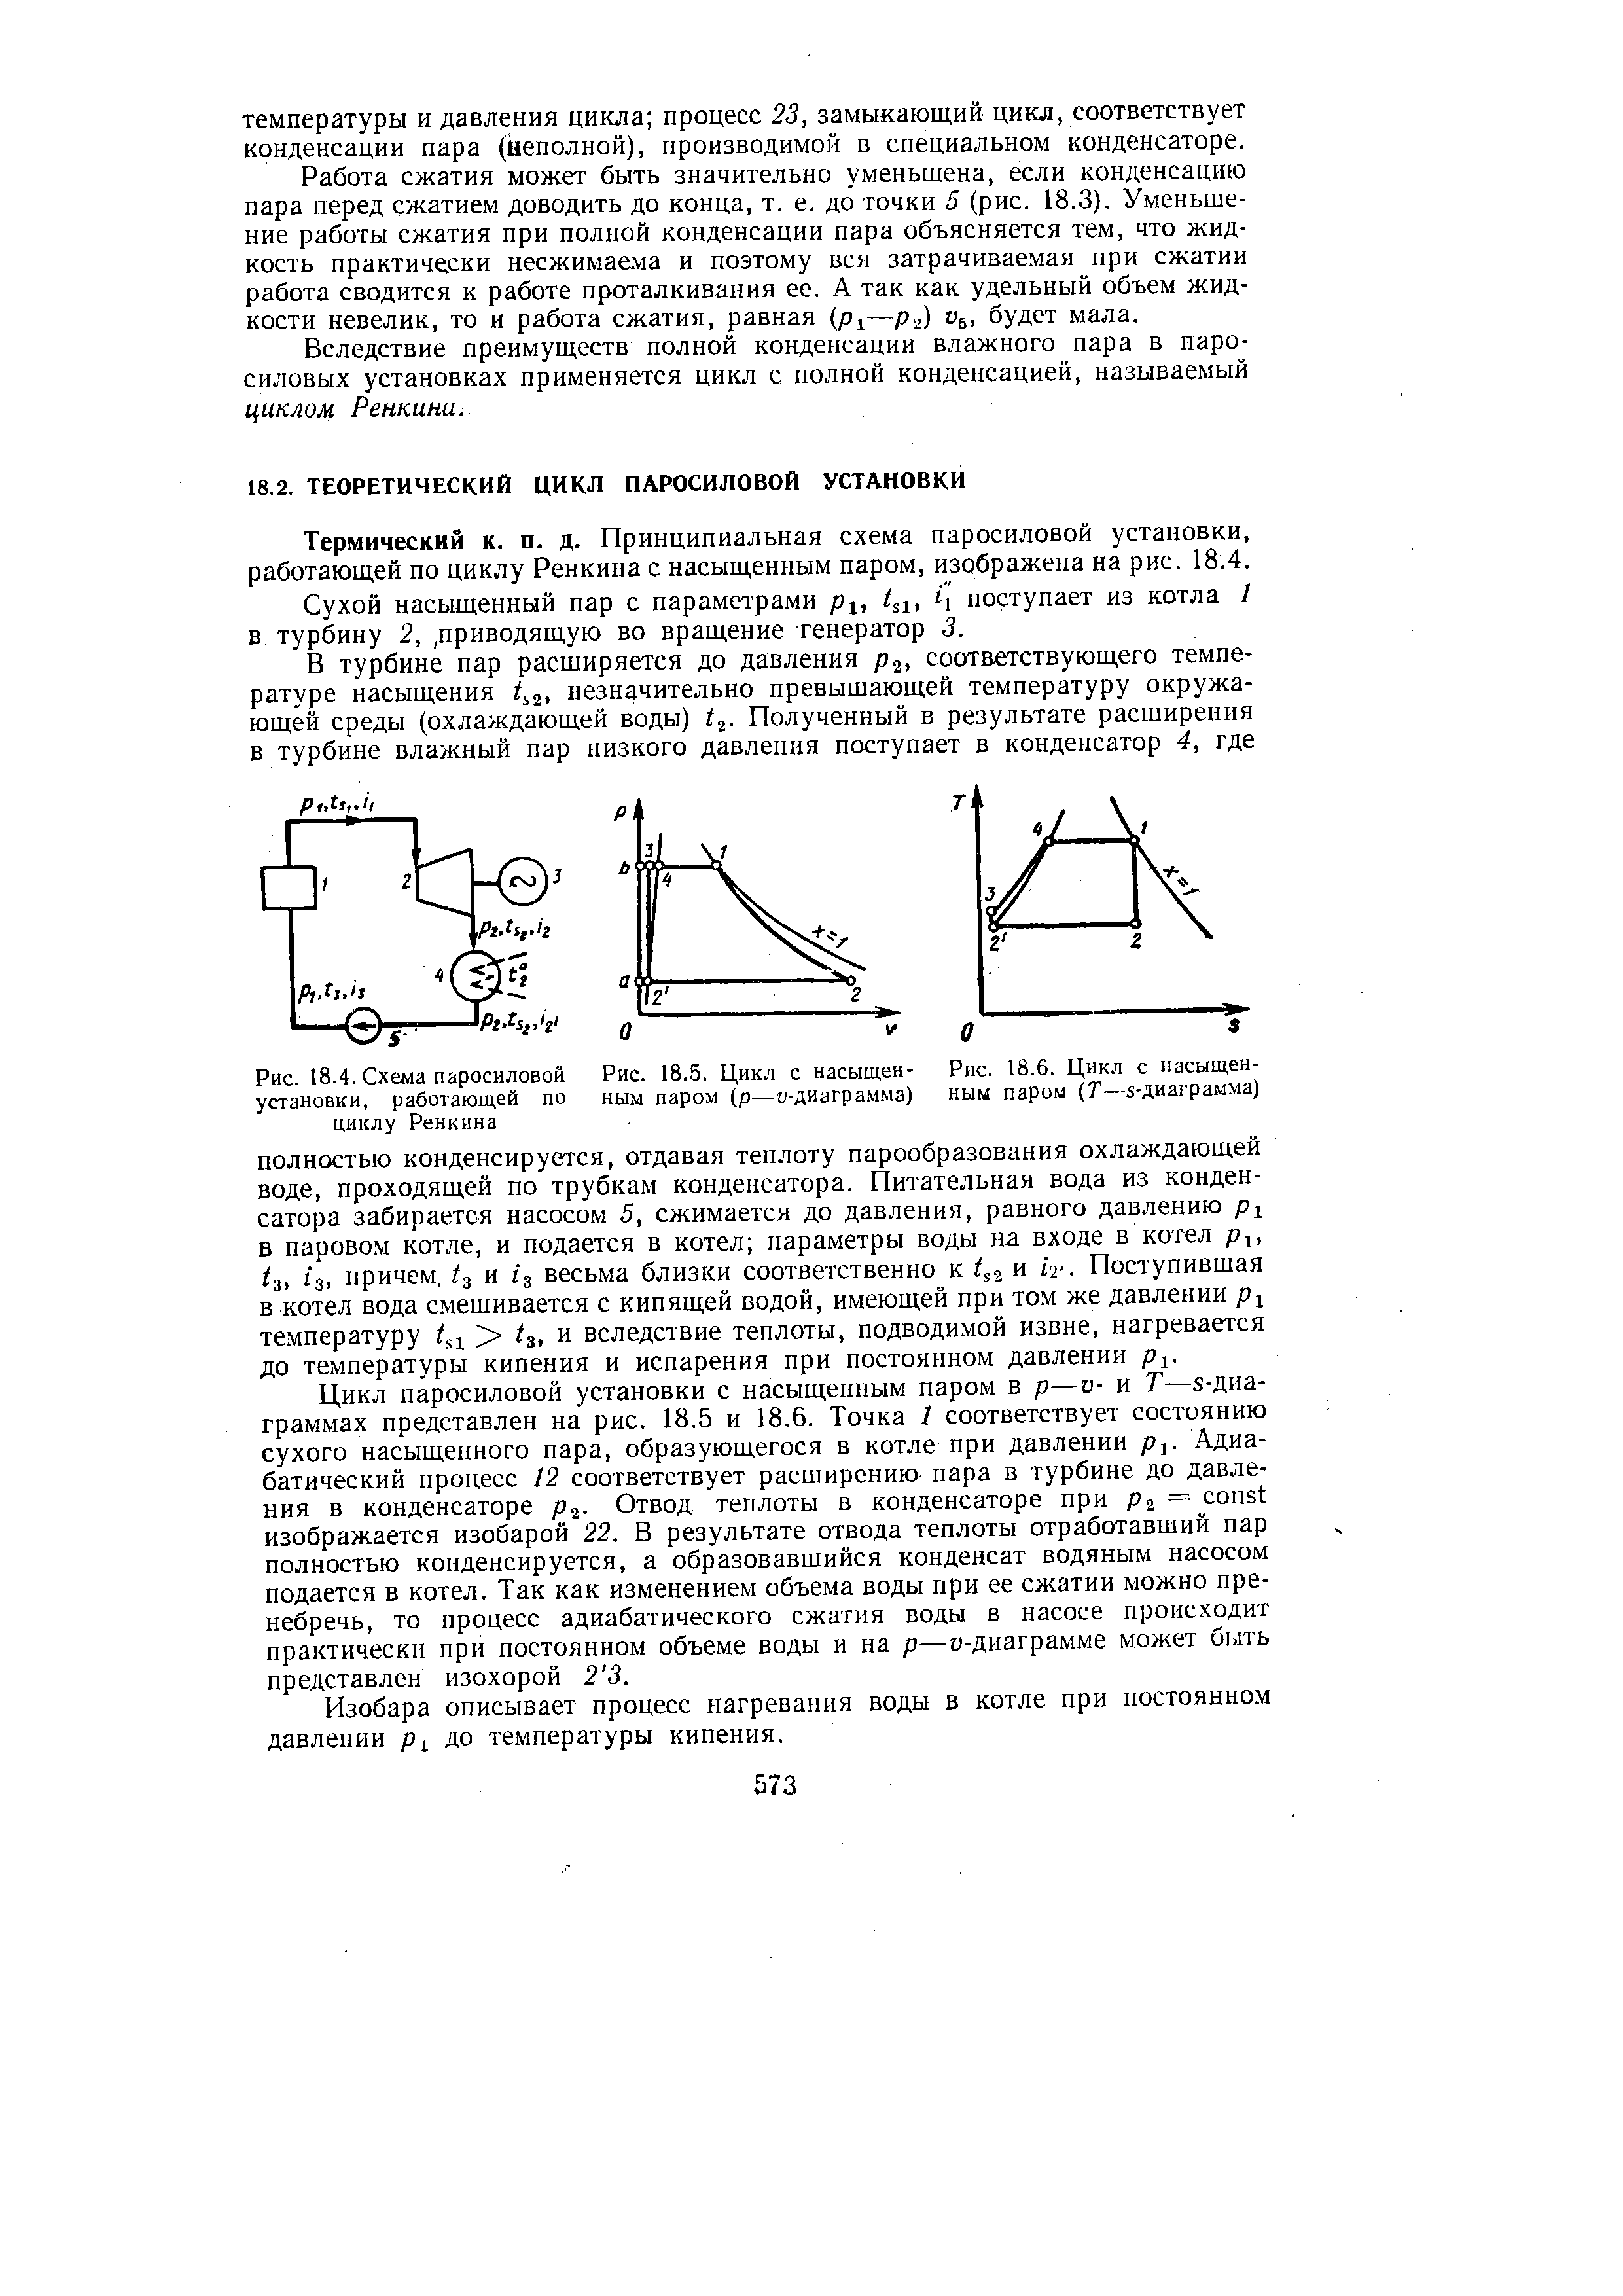 Термический к. п. д. Принципиальная схема паросиловой установки, работающей по циклу Ренкина с насыщенным паром, изображена на рис. 18.4.
